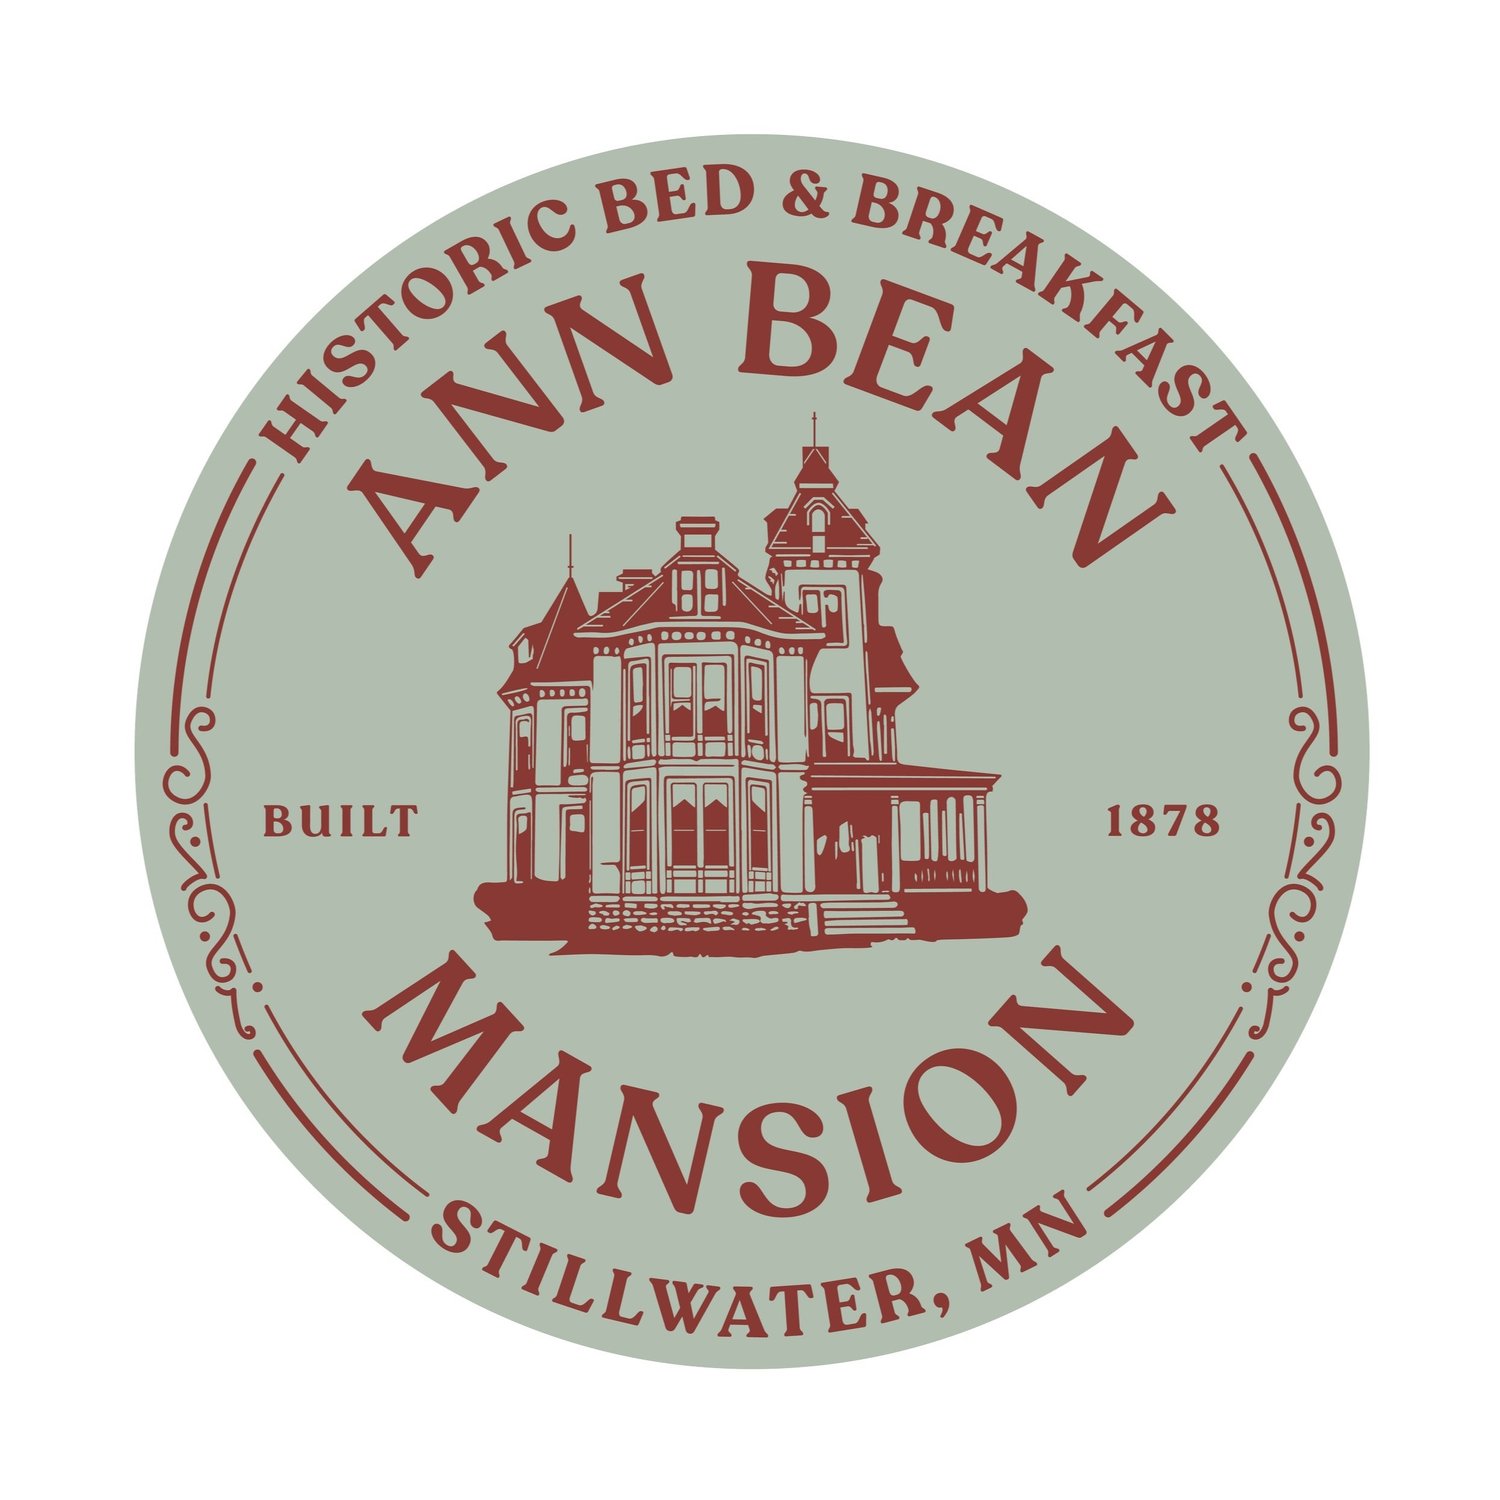 Ann Bean Mansion Bed & Breakfast